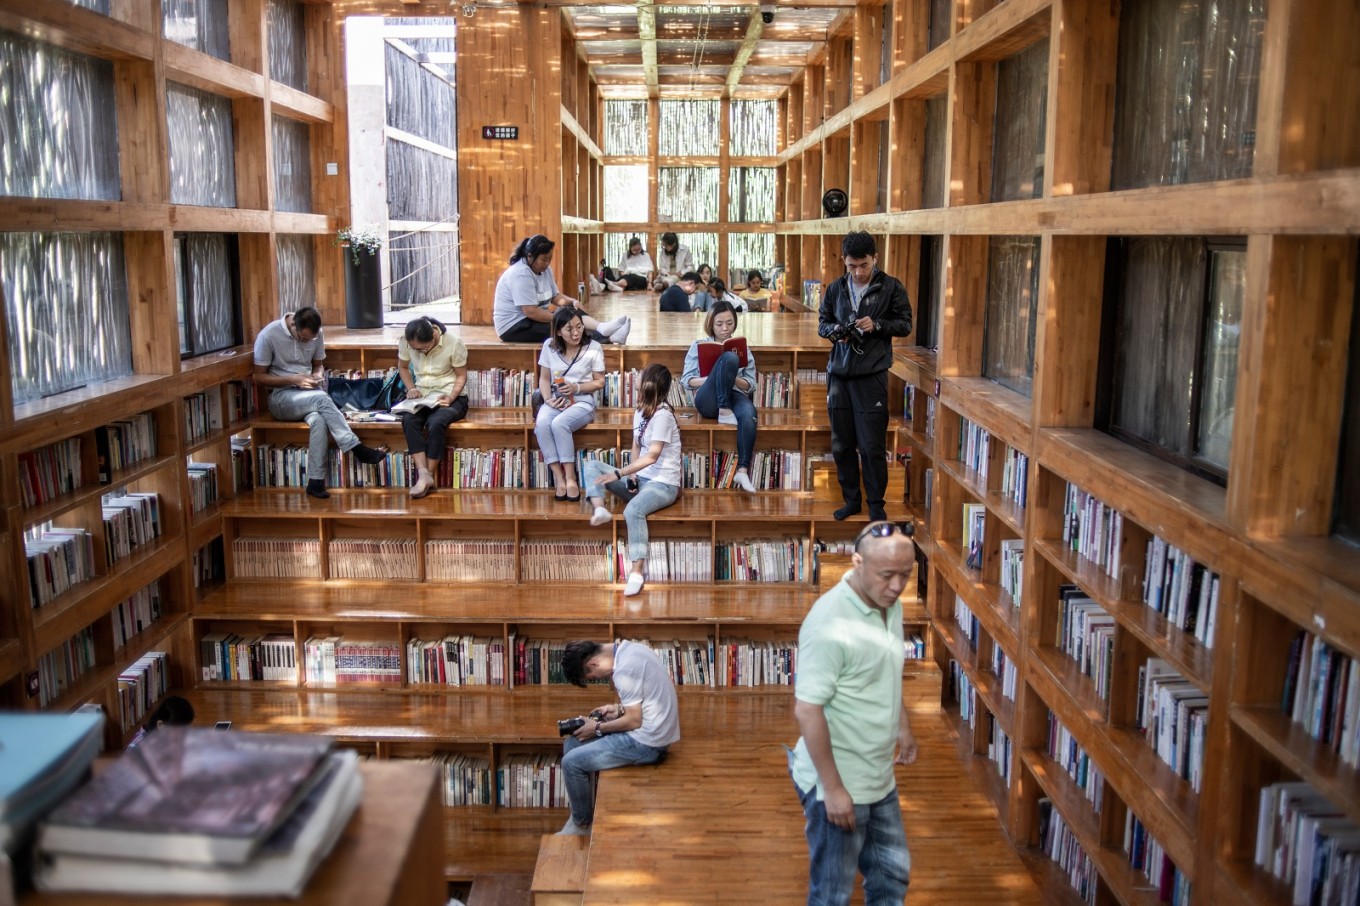 Bookworm library. Библиотека Лиюань, Китай. Сельская библиотека Лиюань в КНР. Общественная библиотека Liyuan в Китае. Библиотека Хуайжоу.